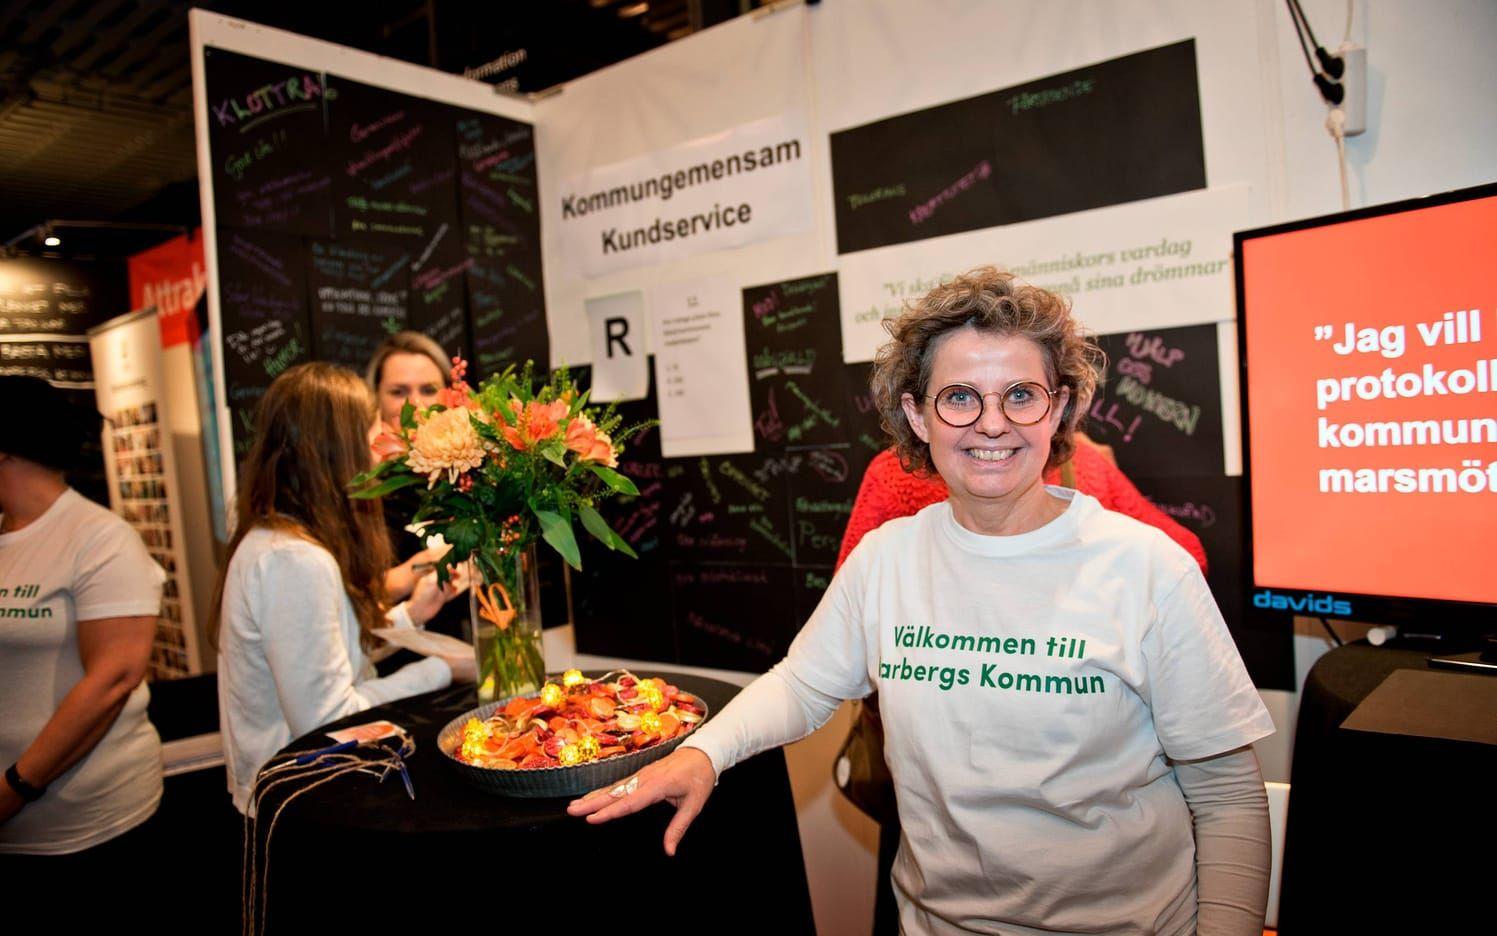 Projektledare Kajsa Jeppson stod i montern för den blivande kommungemensamma kundtjänsten. Bild: Erika Arnadottir